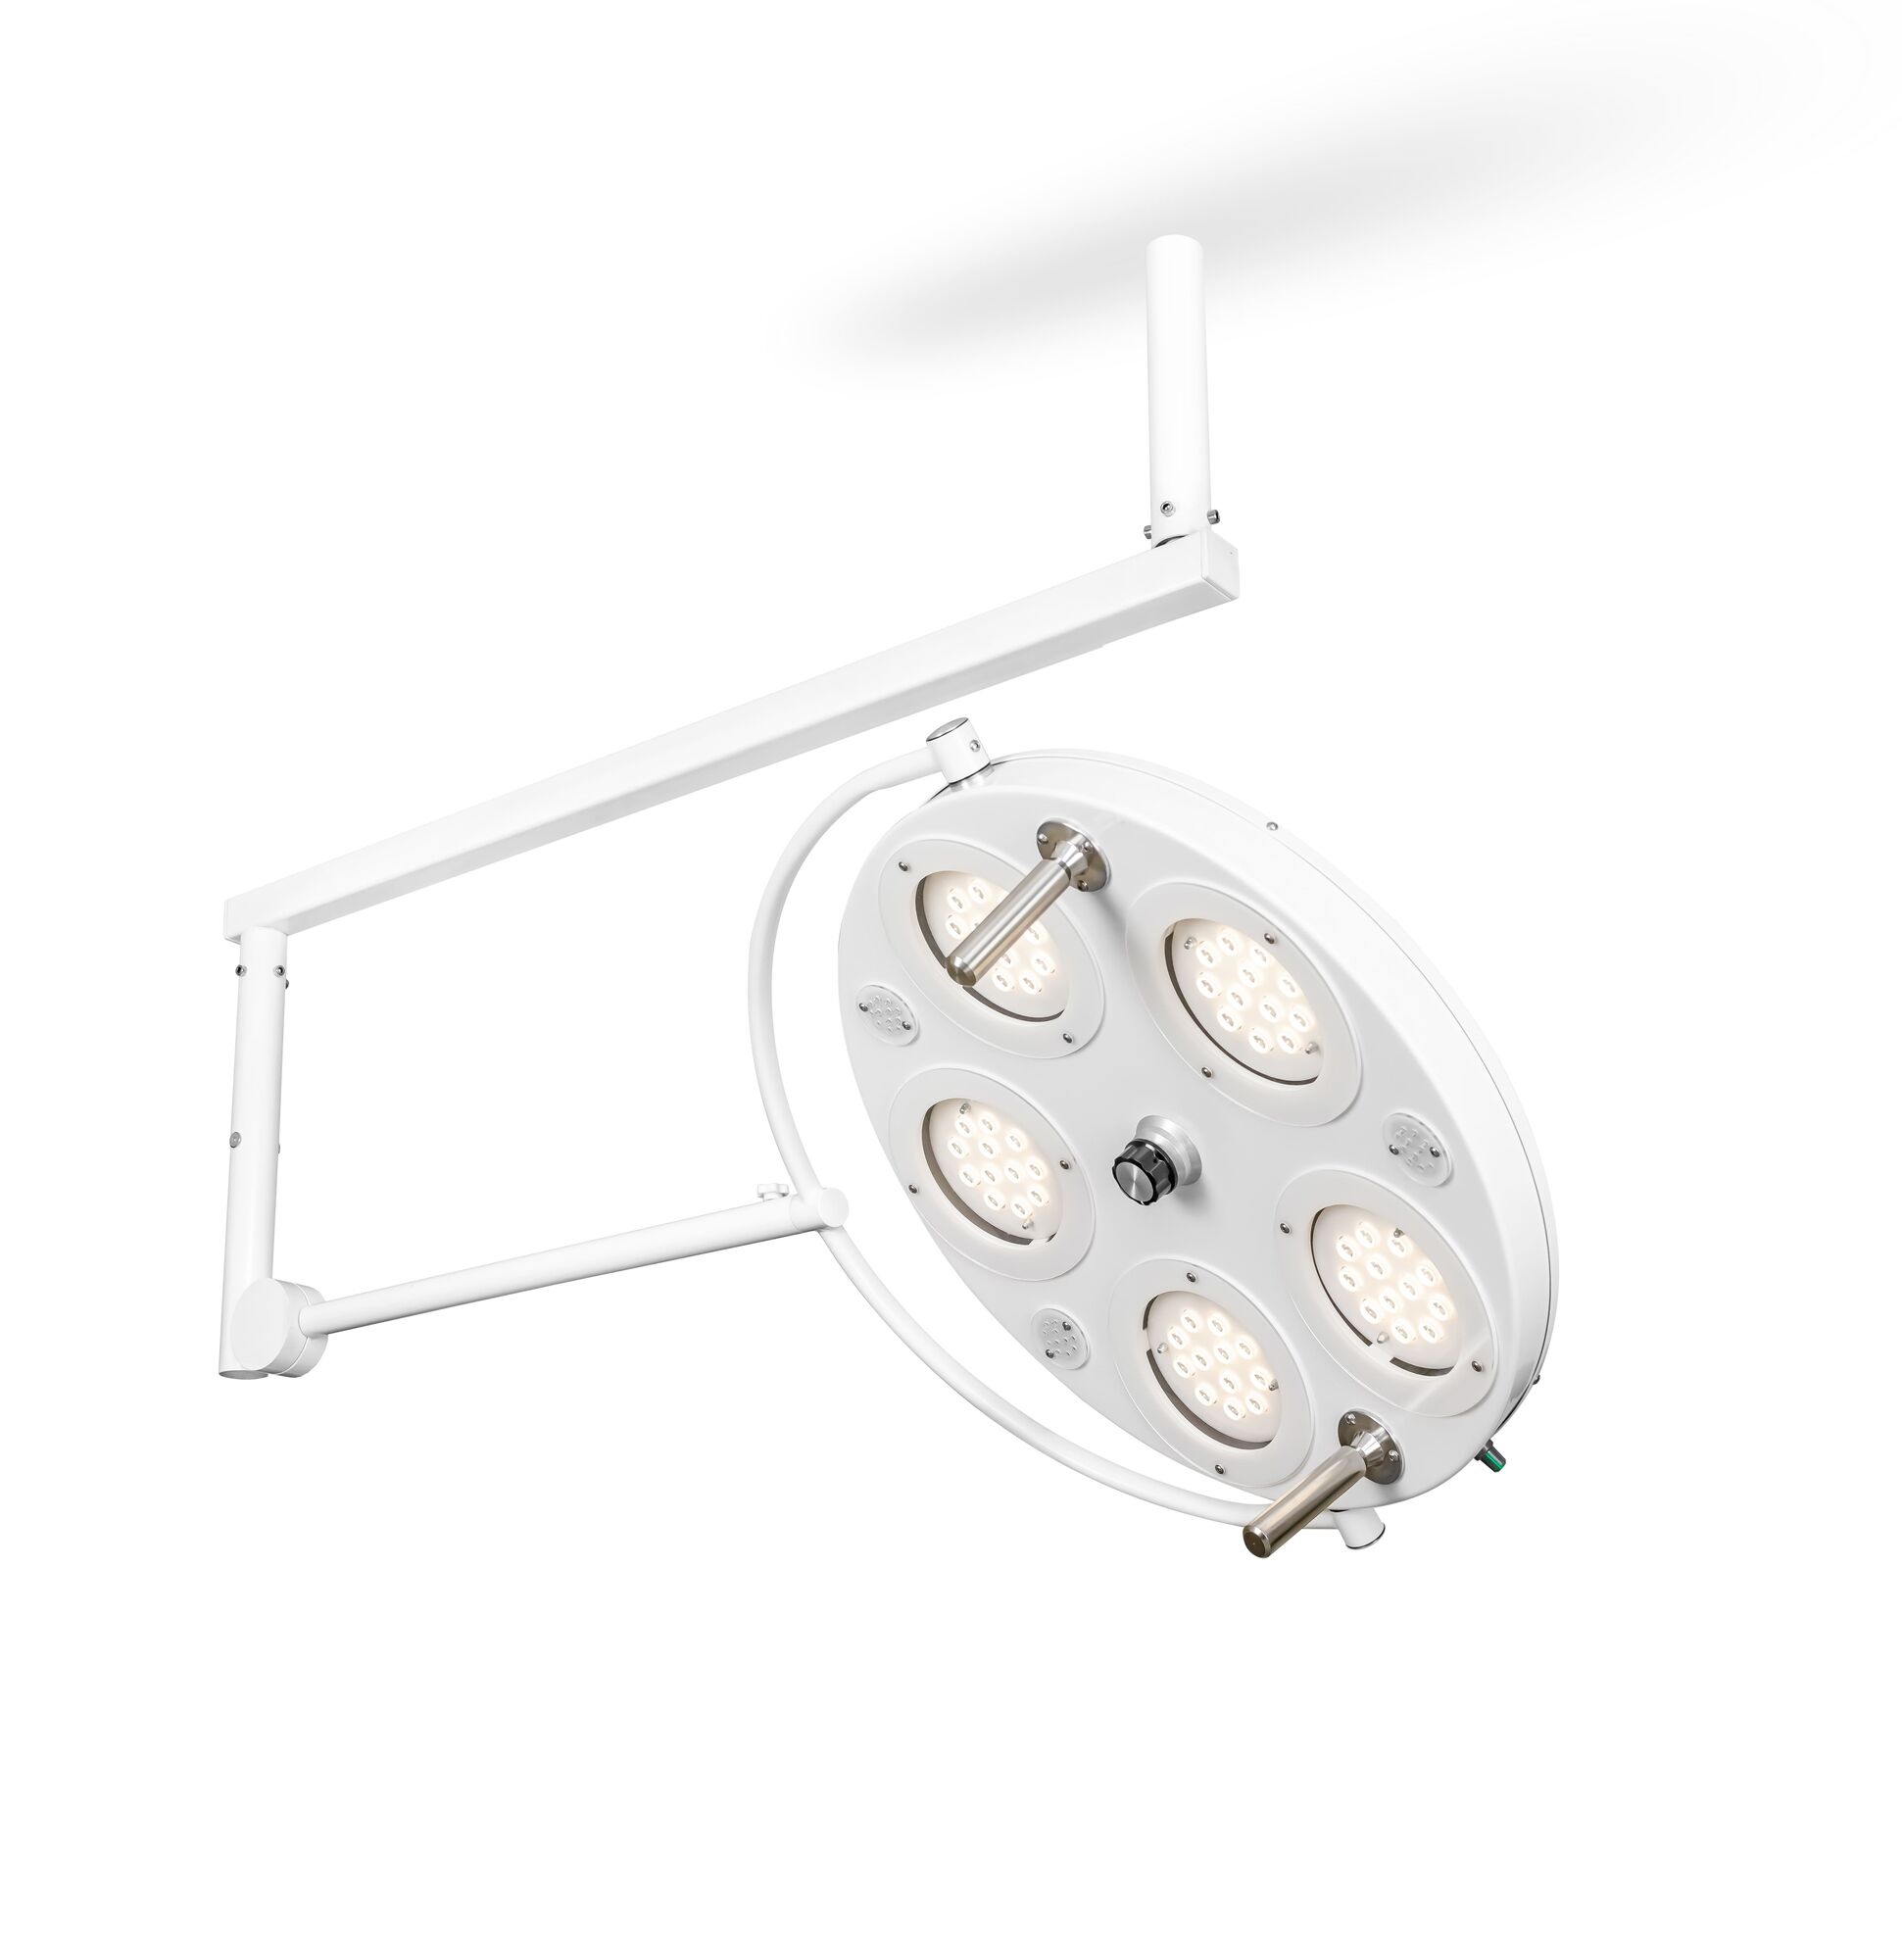 Хирургический медицинский светильник FotonFLY 5М-A с ИБП